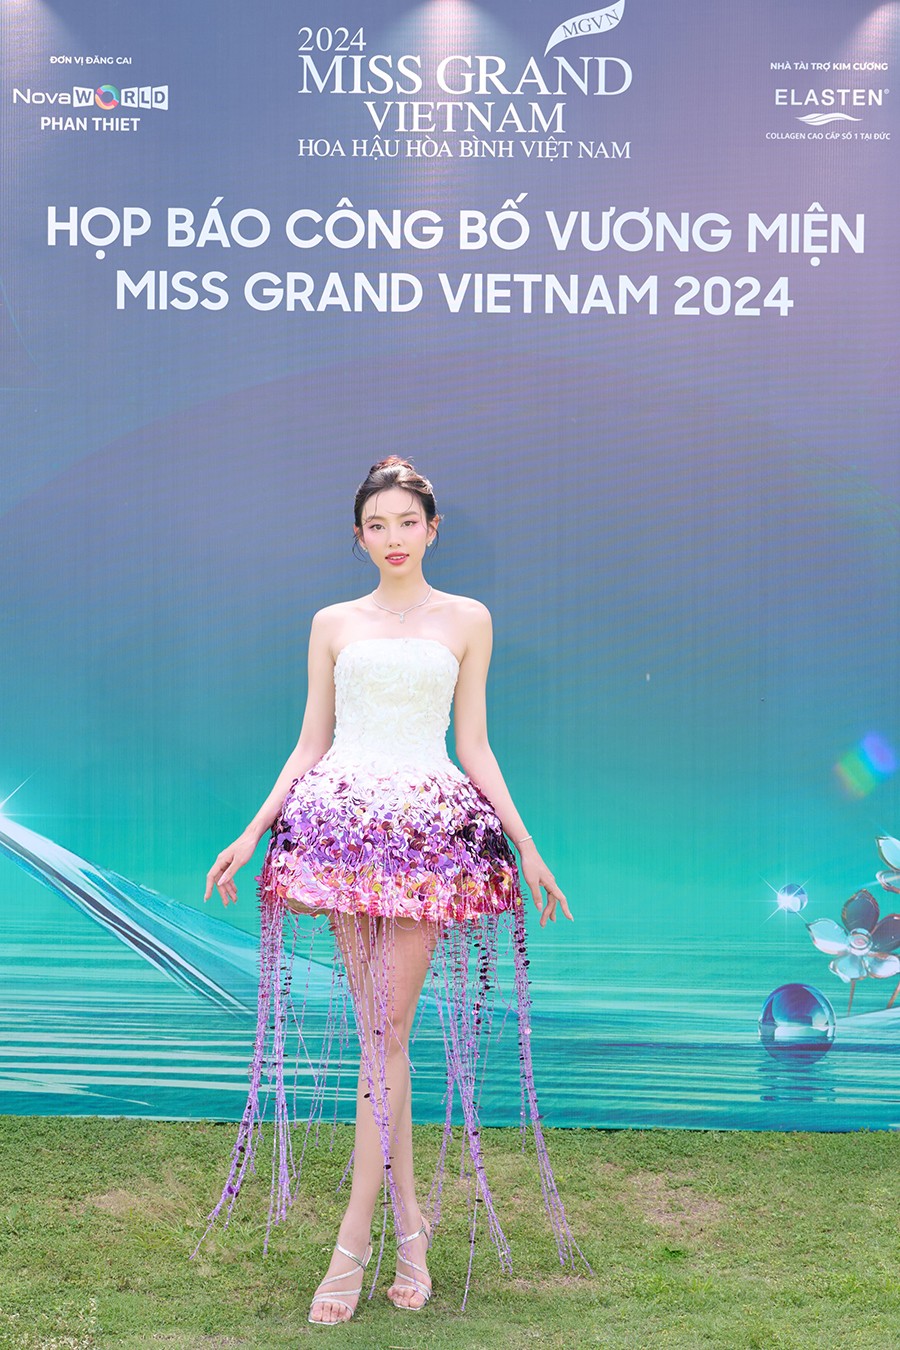 'Miss Grand Vietnam 2024' công bố vương miện từ vàng 24K, hơn 1.000 viên đá kim vương và ngọc lục bảo